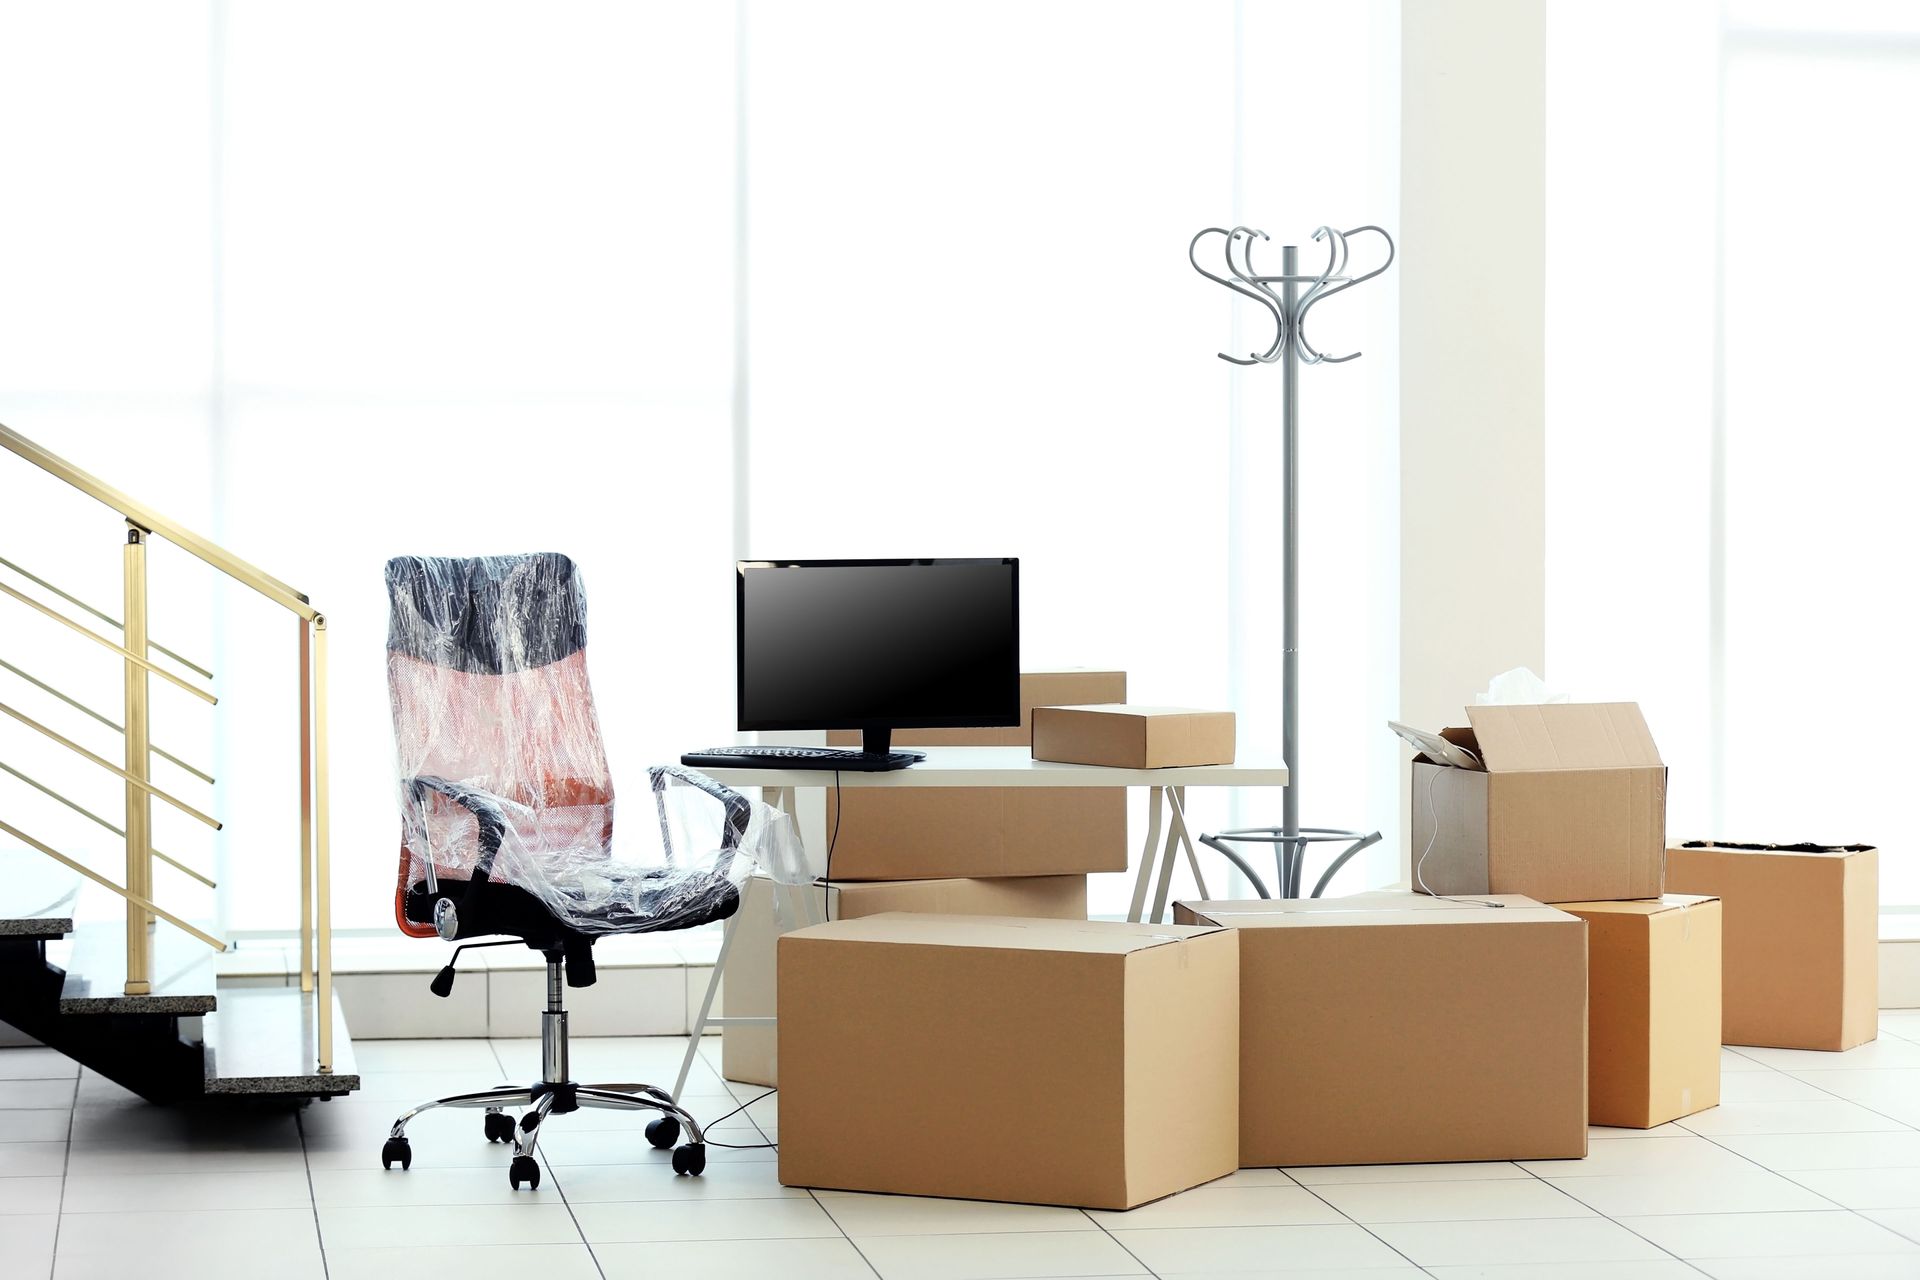 Une chaise de bureau emballée et des cartons de déménagement dans un bureau